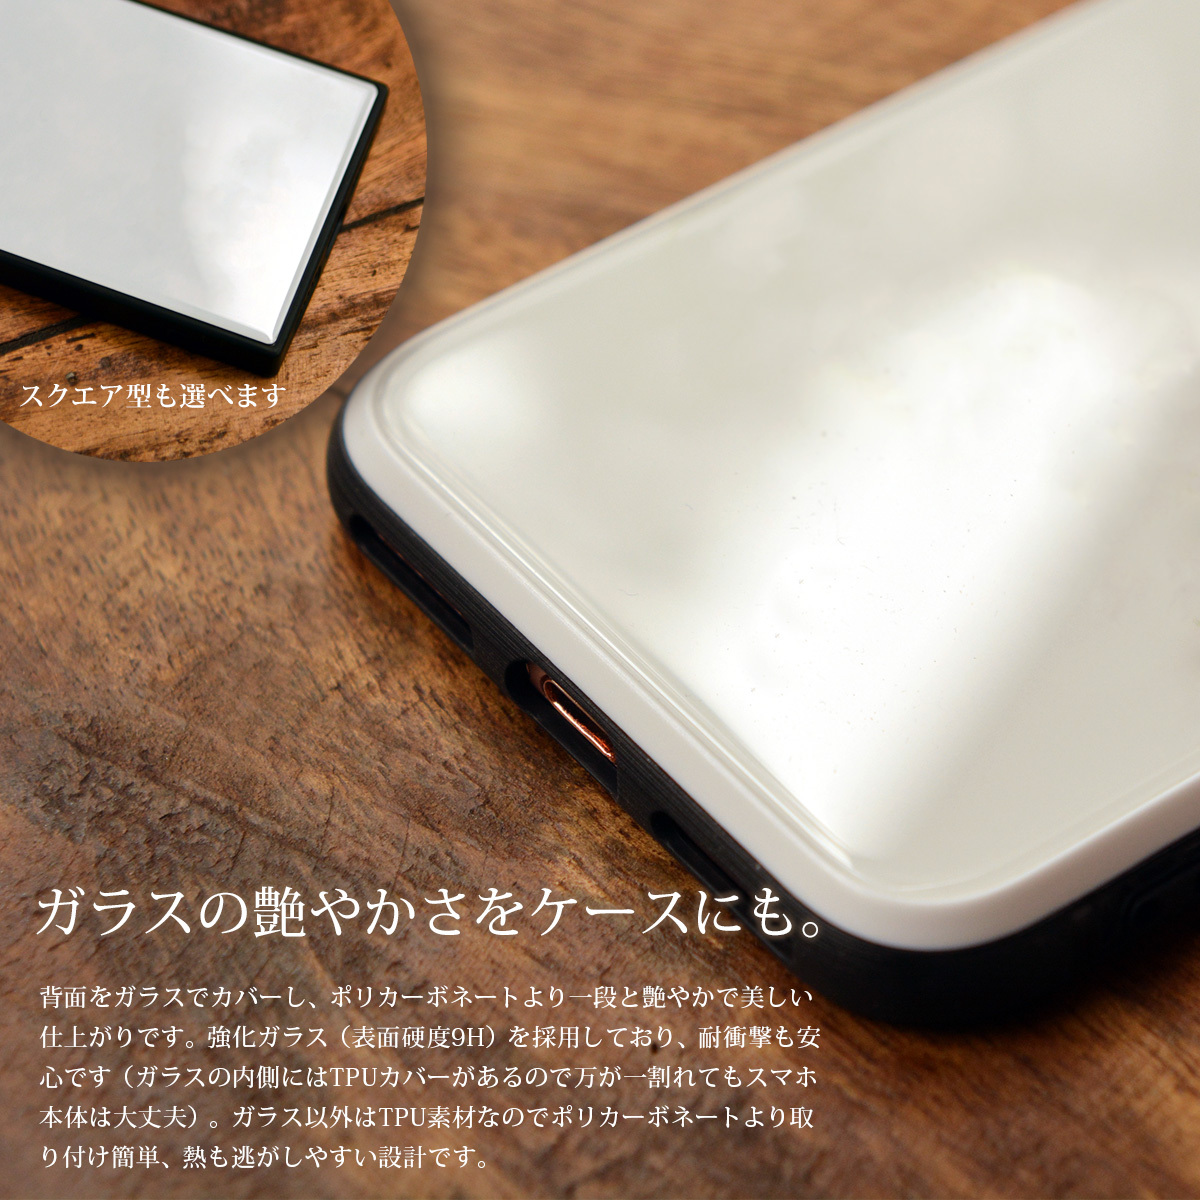 強化ガラス Iphone11 スマホカバー モノクロの森 うさぎ スマホケース Iphoneケース 携帯ケース ケースガーデン